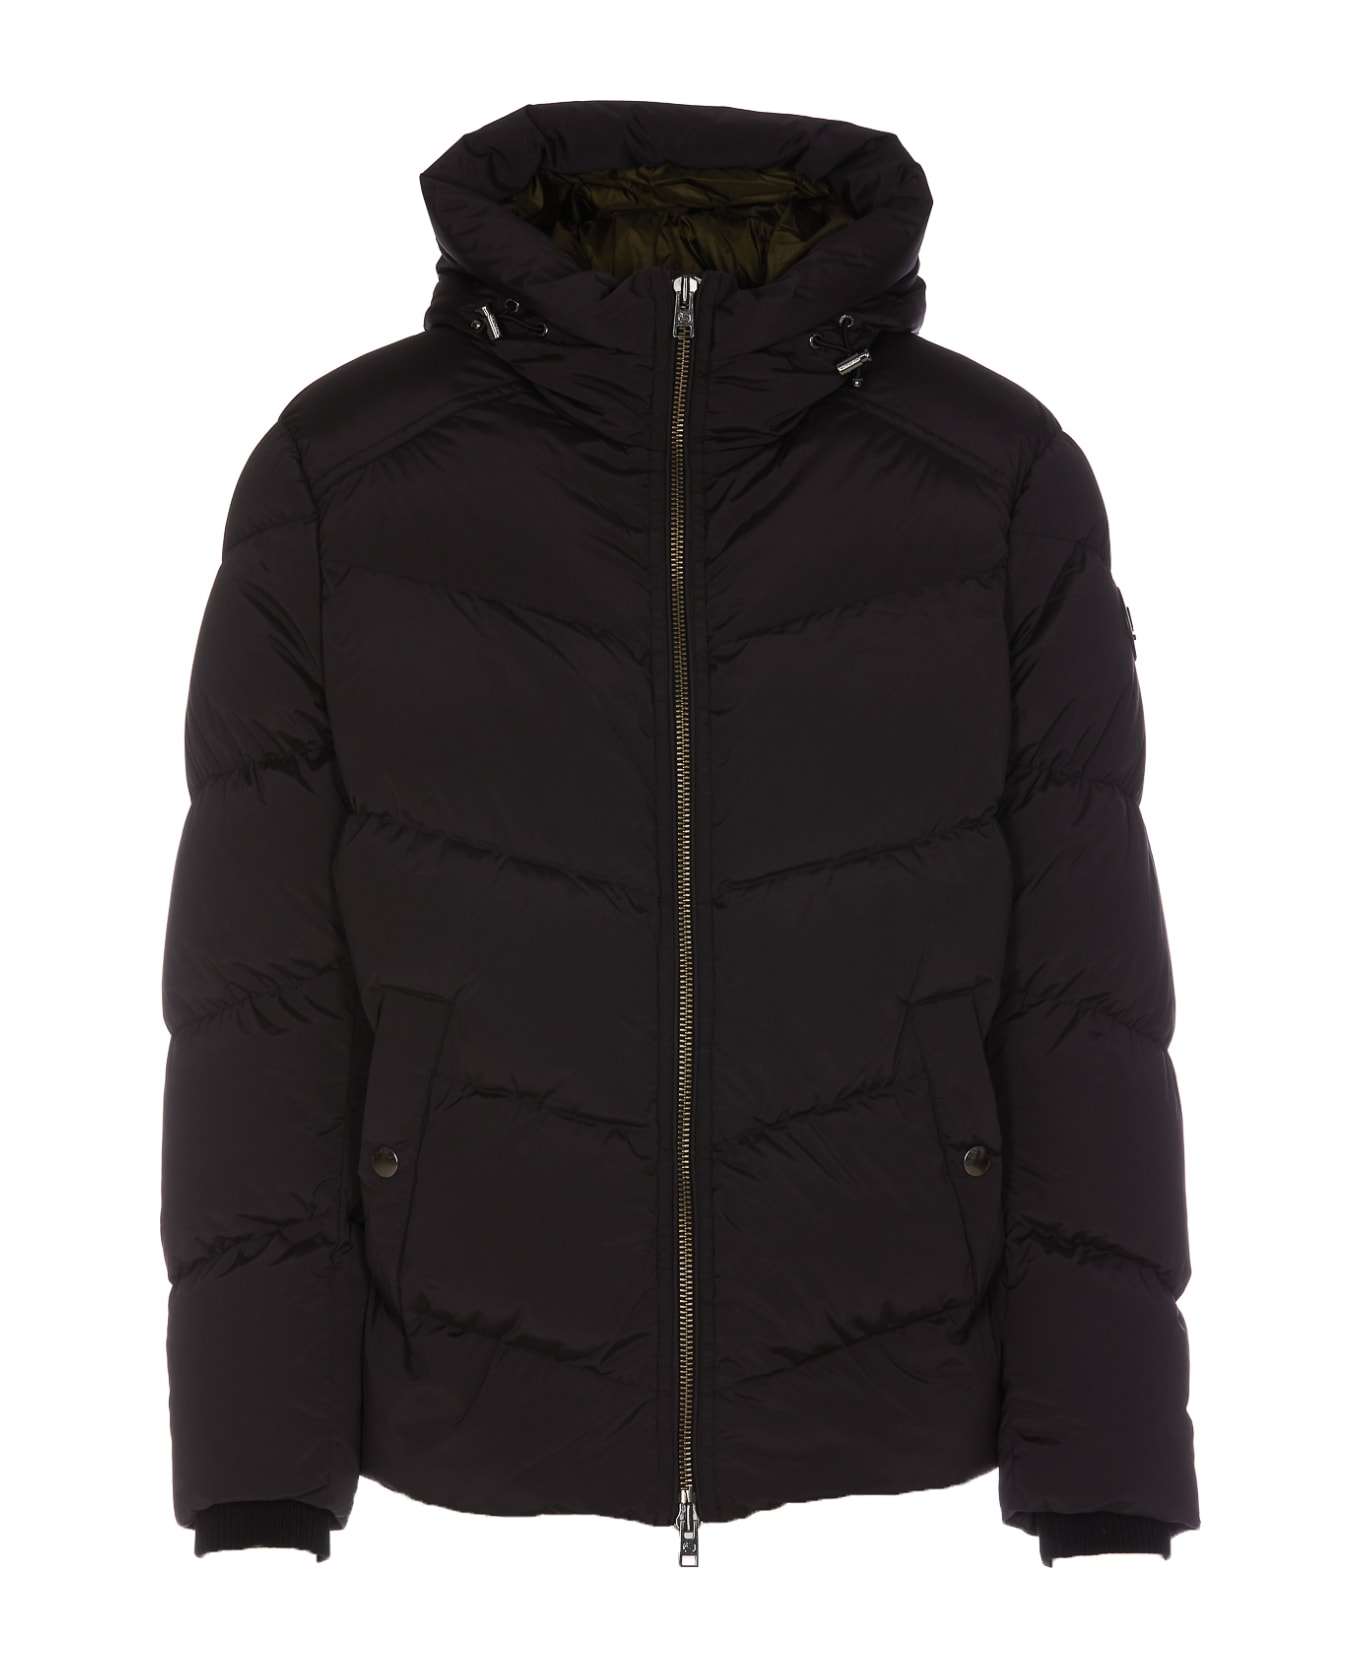 Woolrich Premium Down Jacket - Black